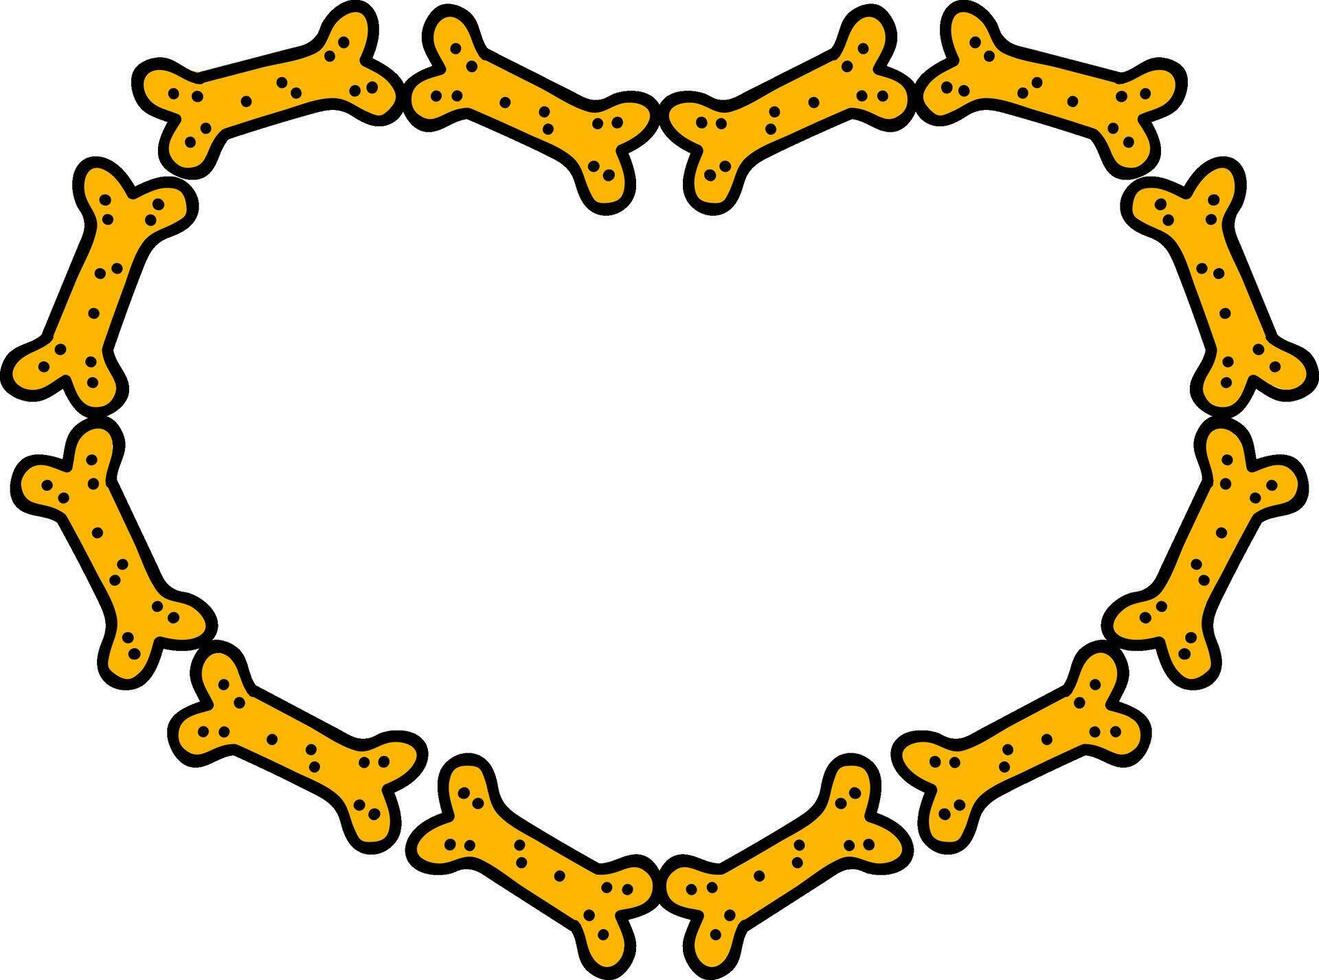 Dog food biscuit in heart shape color vector illustration